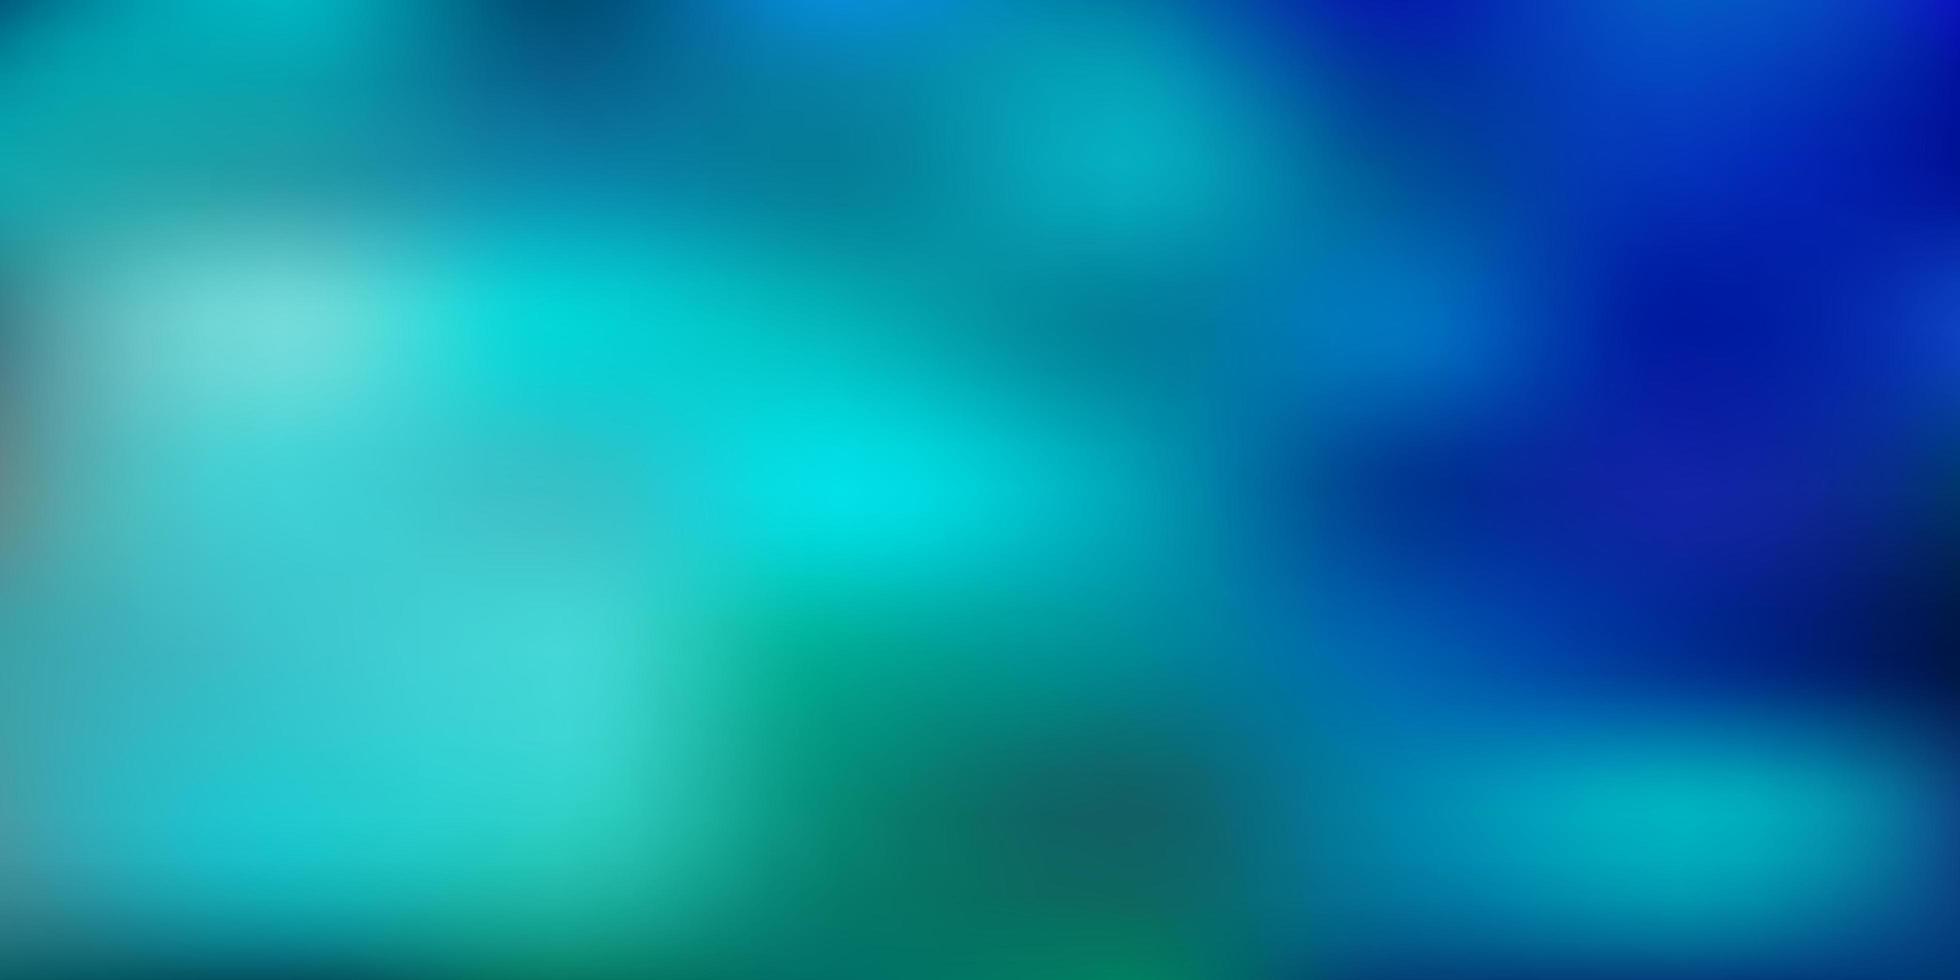 hellblauer, grüner Vektor unscharfer Hintergrund.